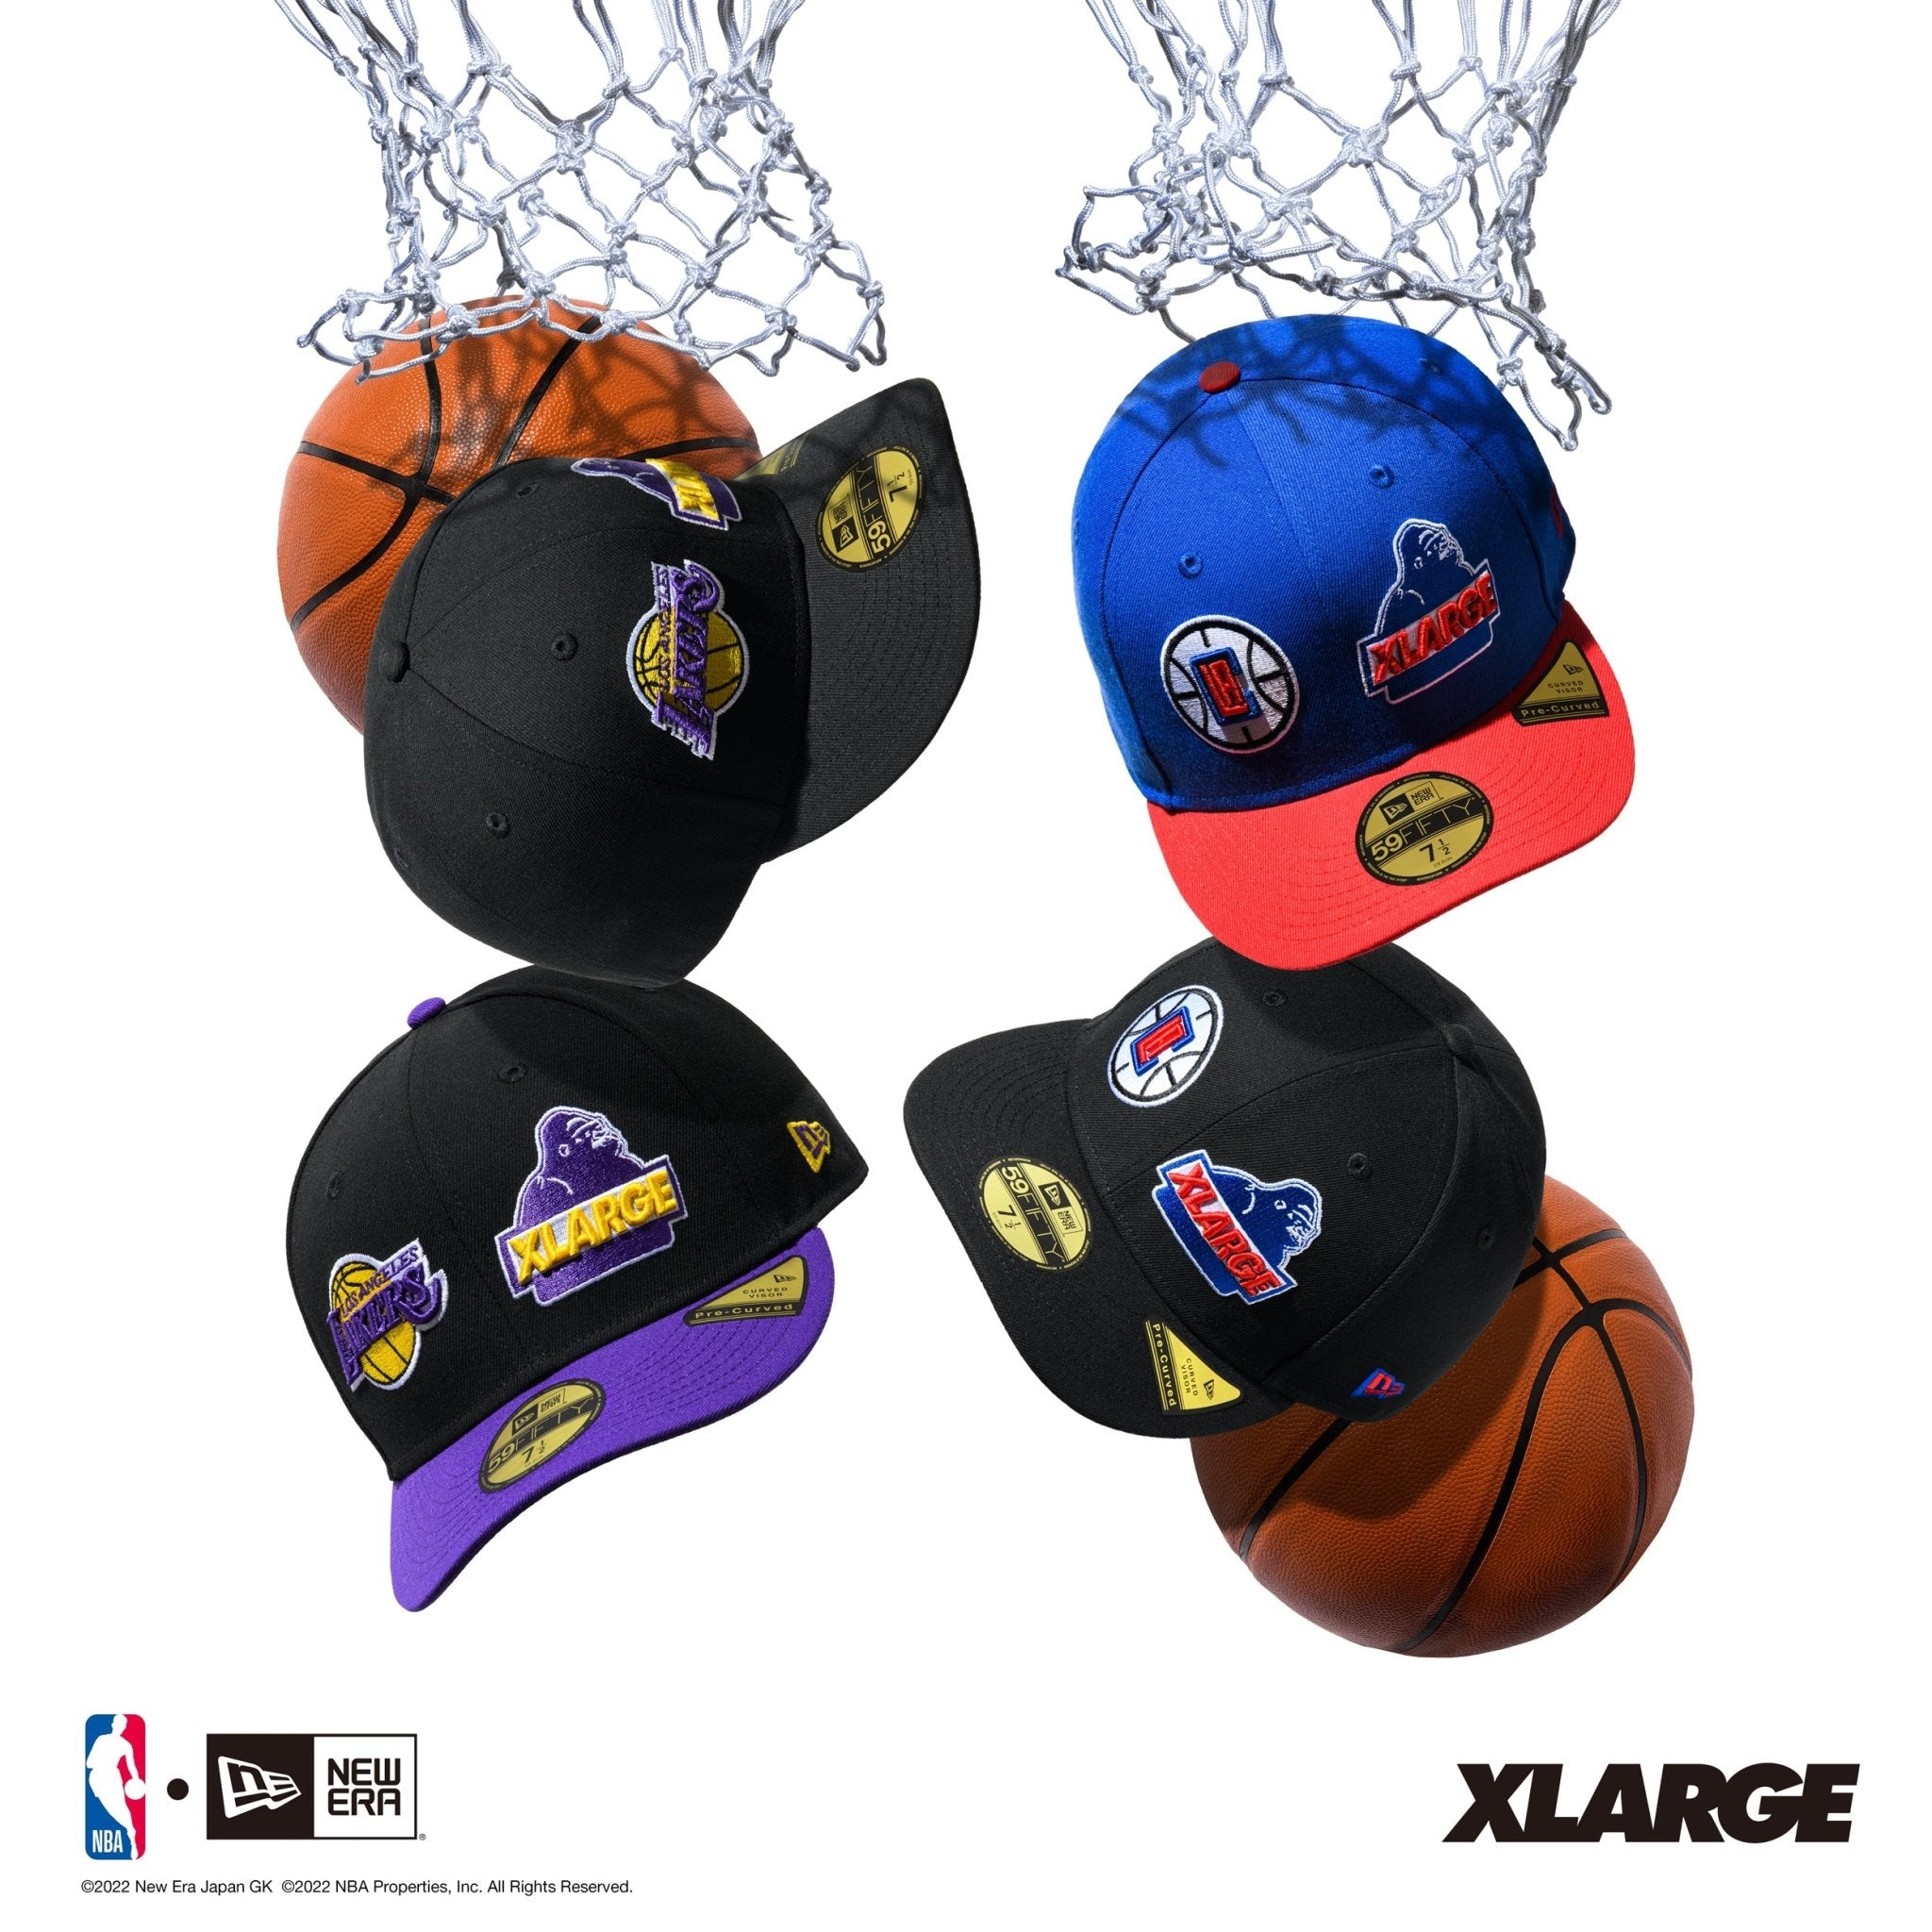 1/22 12:00 発売 XLARGE x NBA | ニューエラオンラインストア